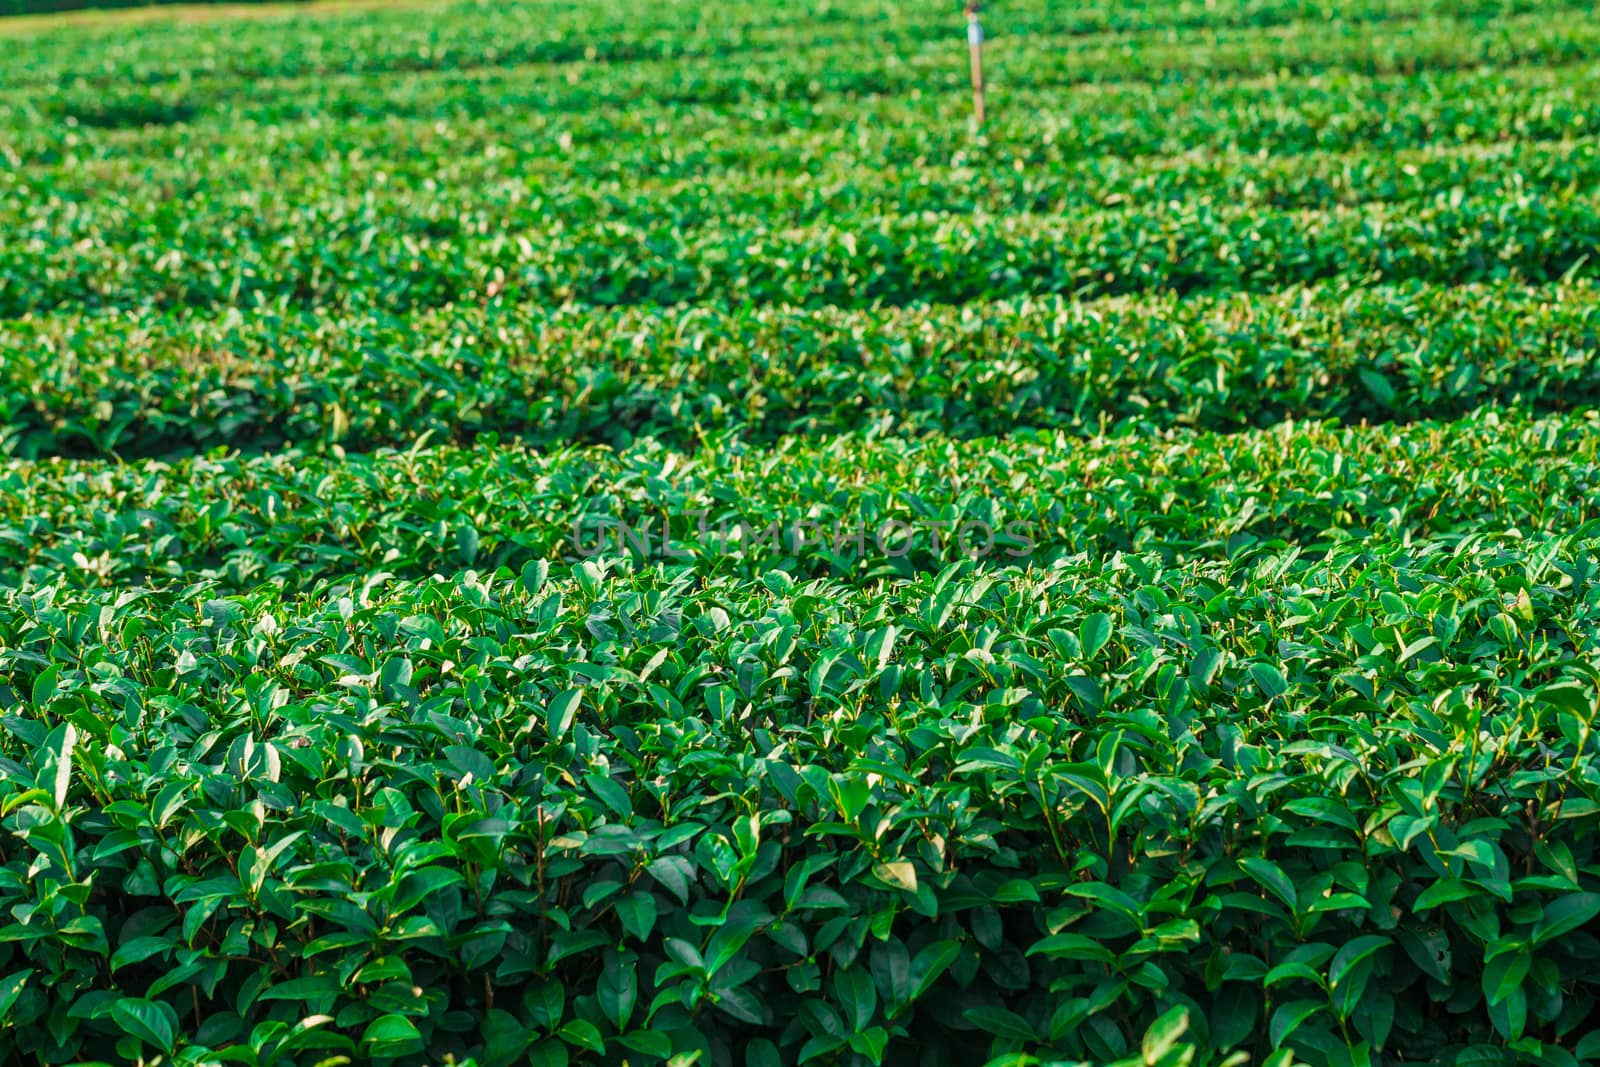 Tea Plantation in Chiangrai Thailand, Green tea field